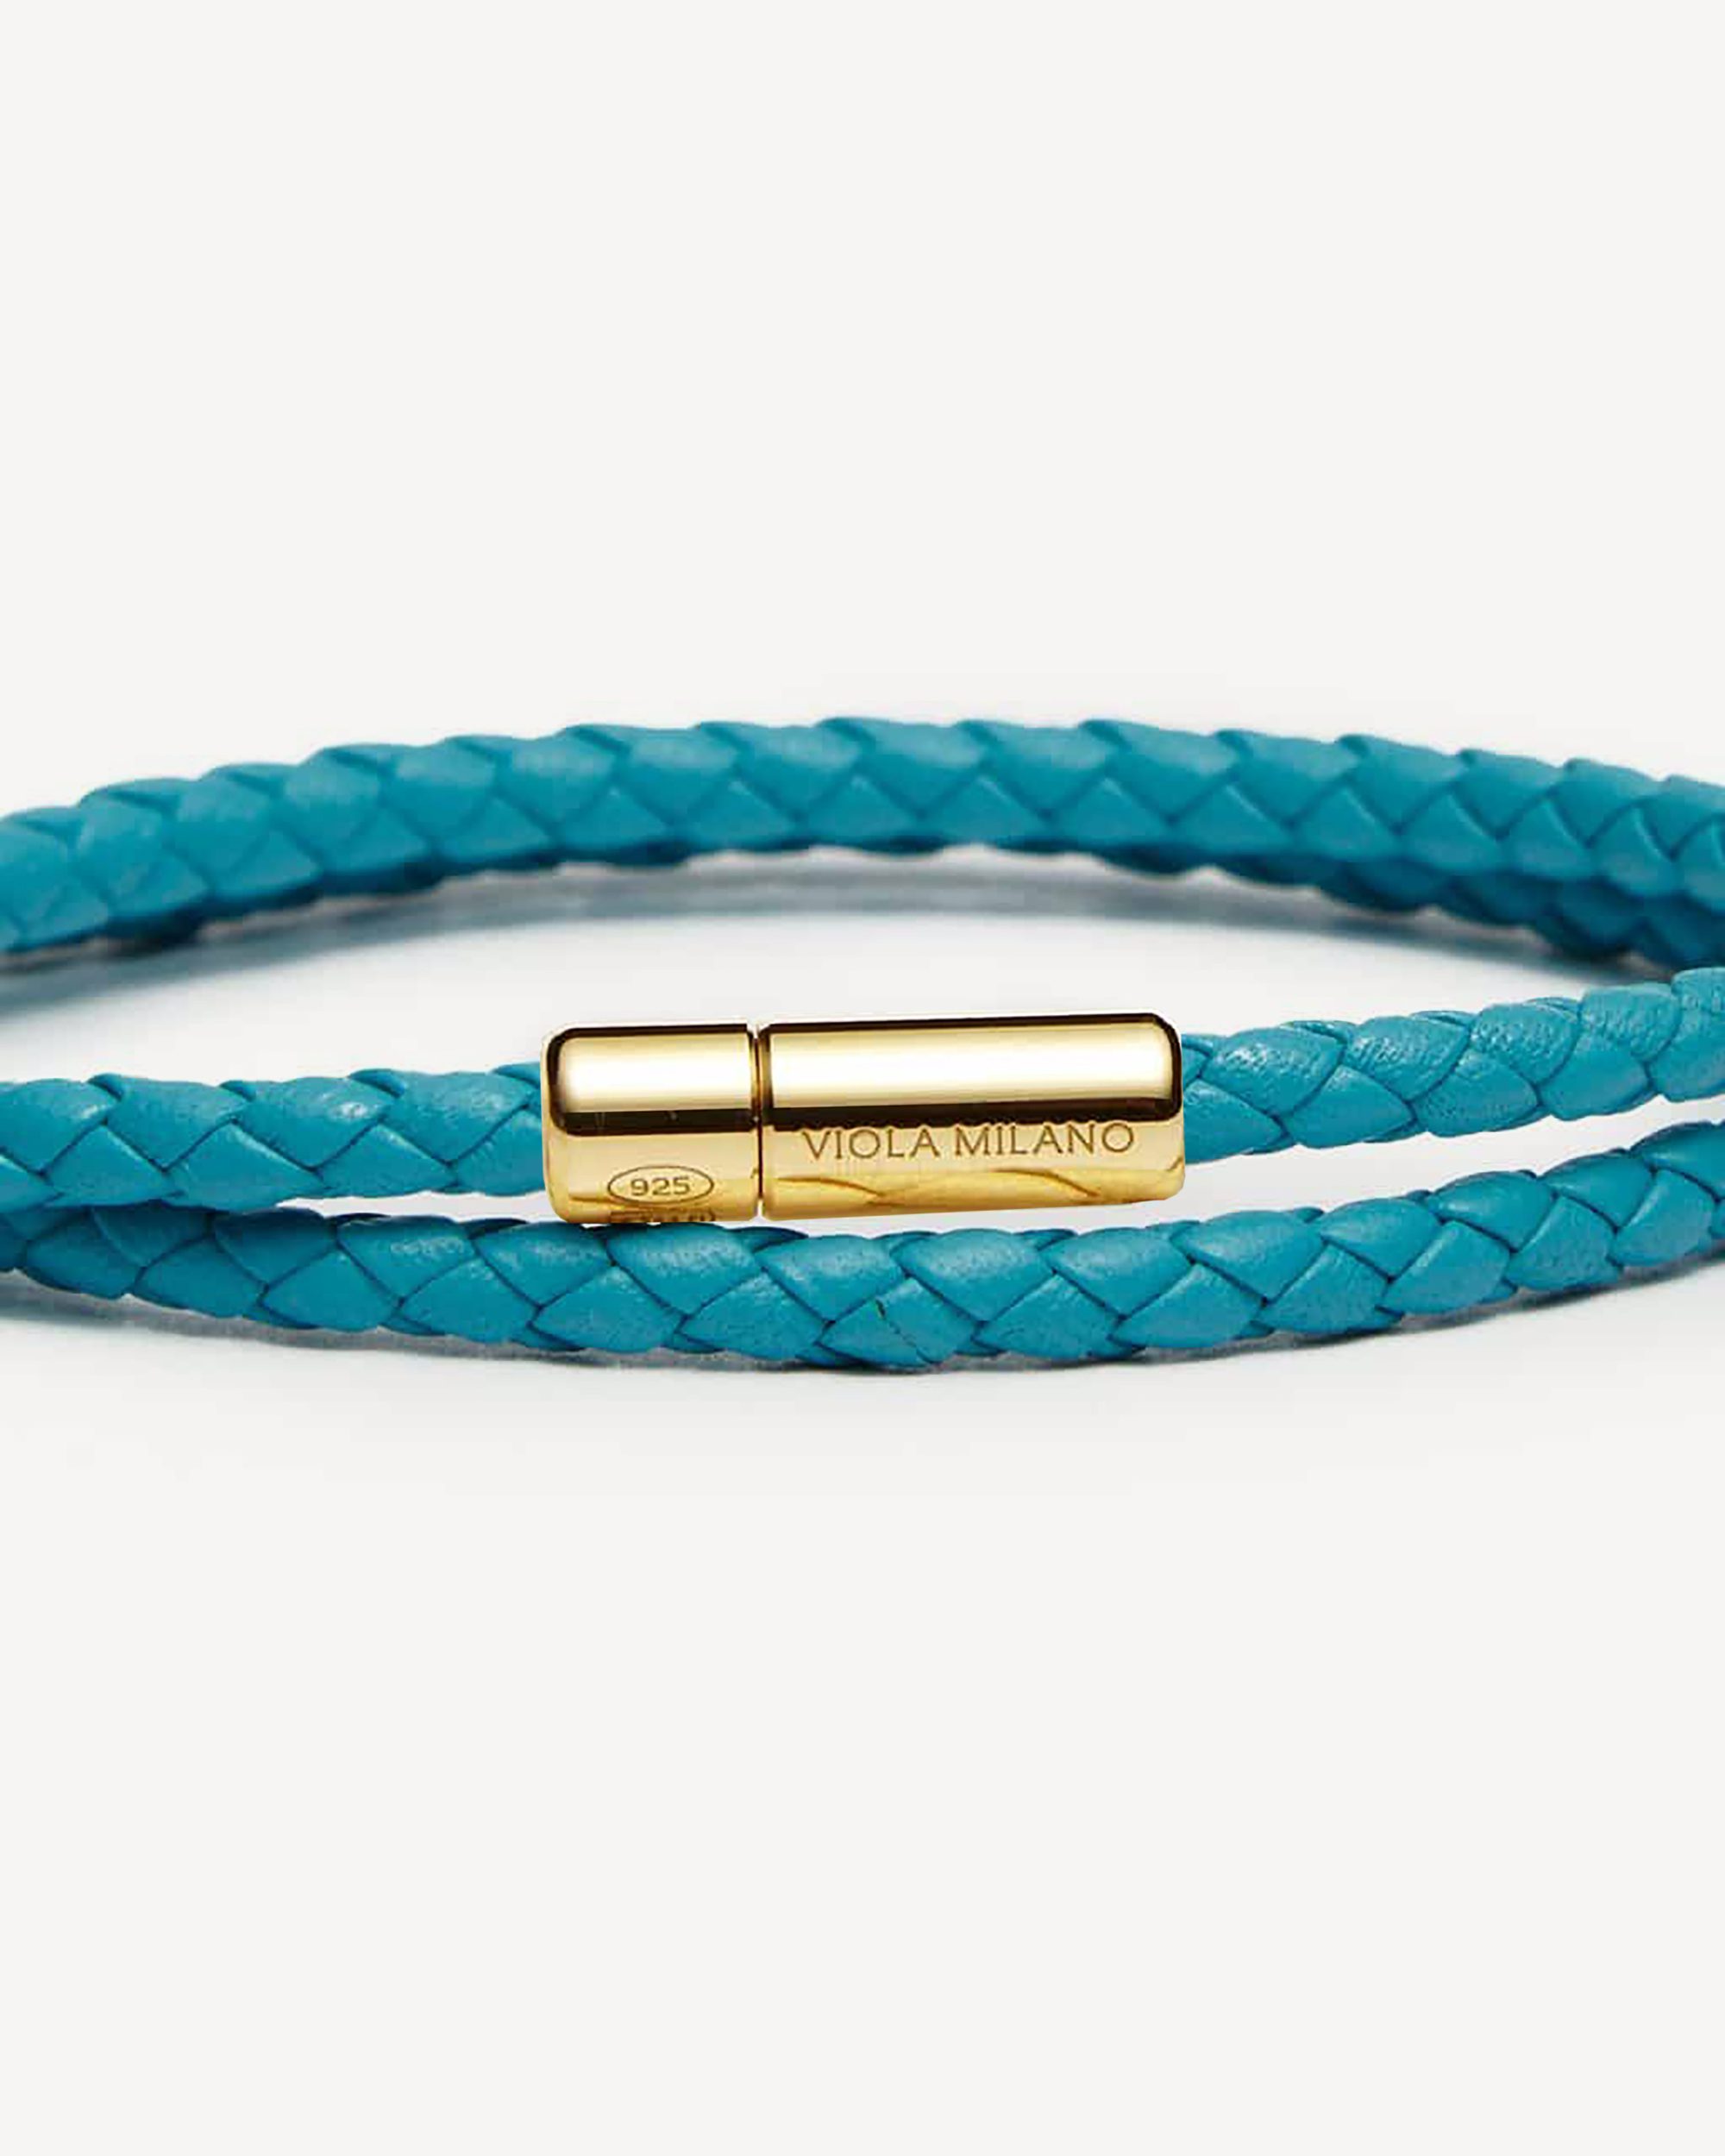 Turquoise Braided Leather Wrap Bracelet